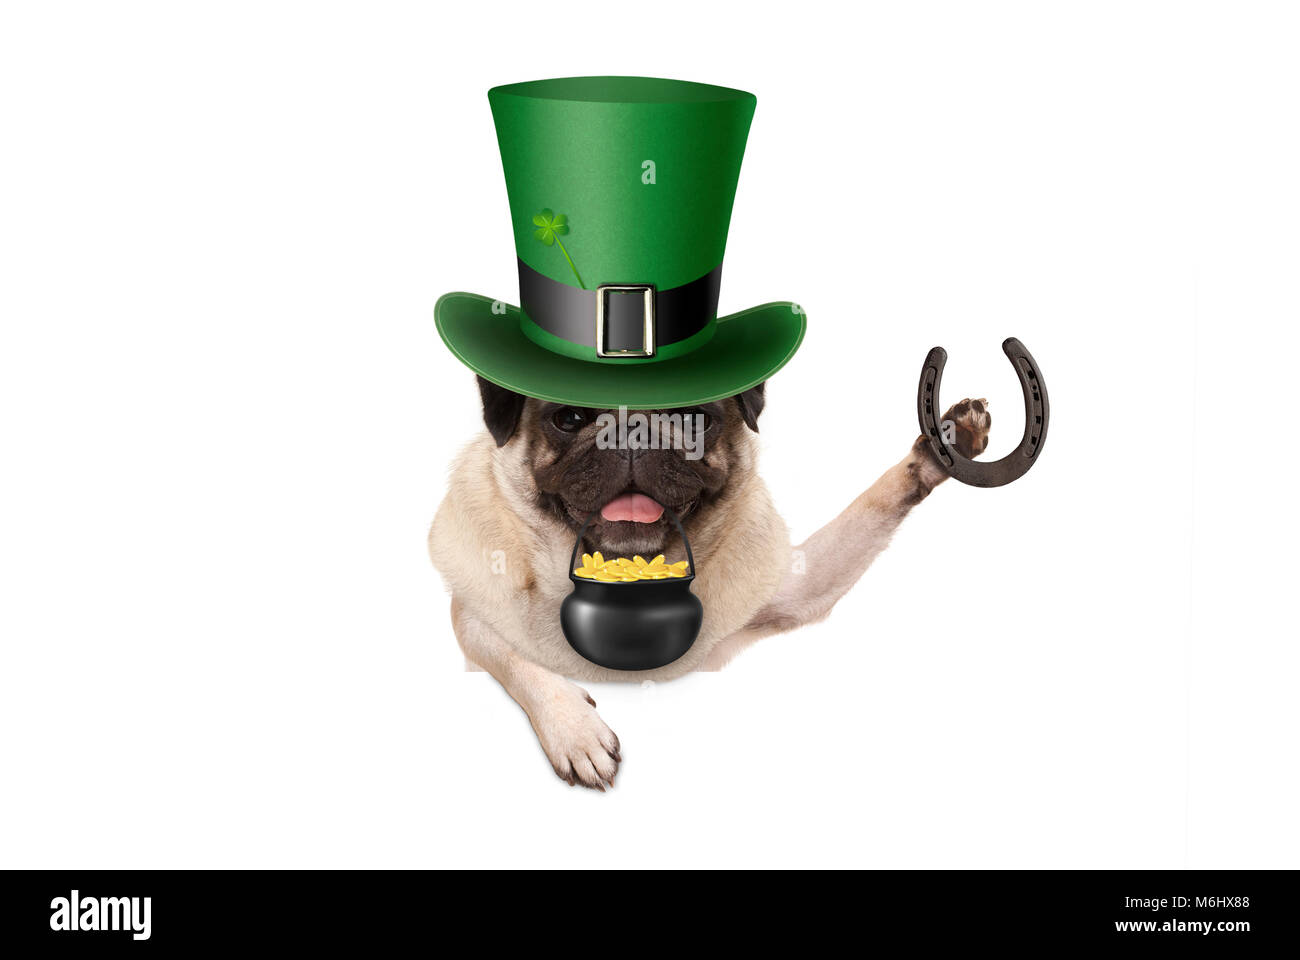 St Patricks day chiot pug dog avec lutin vert hat, holding horseshoe et pot avec des pièces d'or, isolé sur fond blanc Banque D'Images